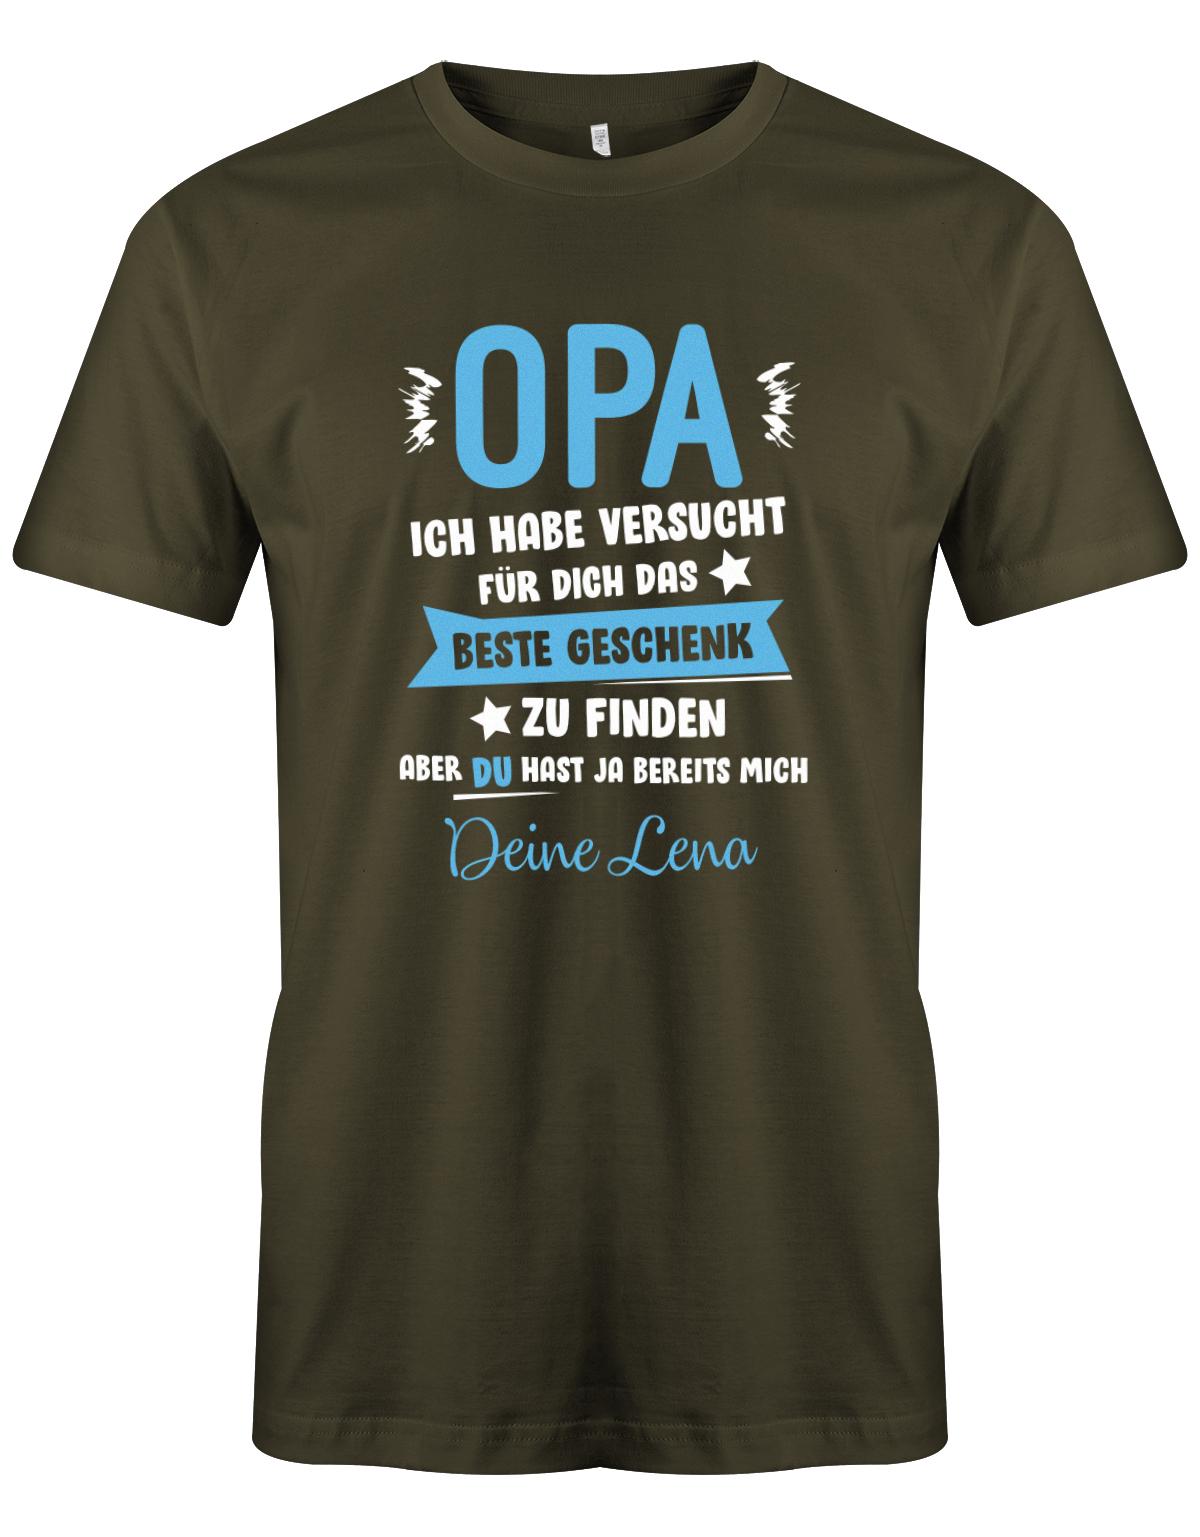 Opa Shirt personalisiert - Opa ich habe versucht, das beste Geschenk für dich zu finden, aber du hast ja bereits mich. Name vom Enkel.  Army